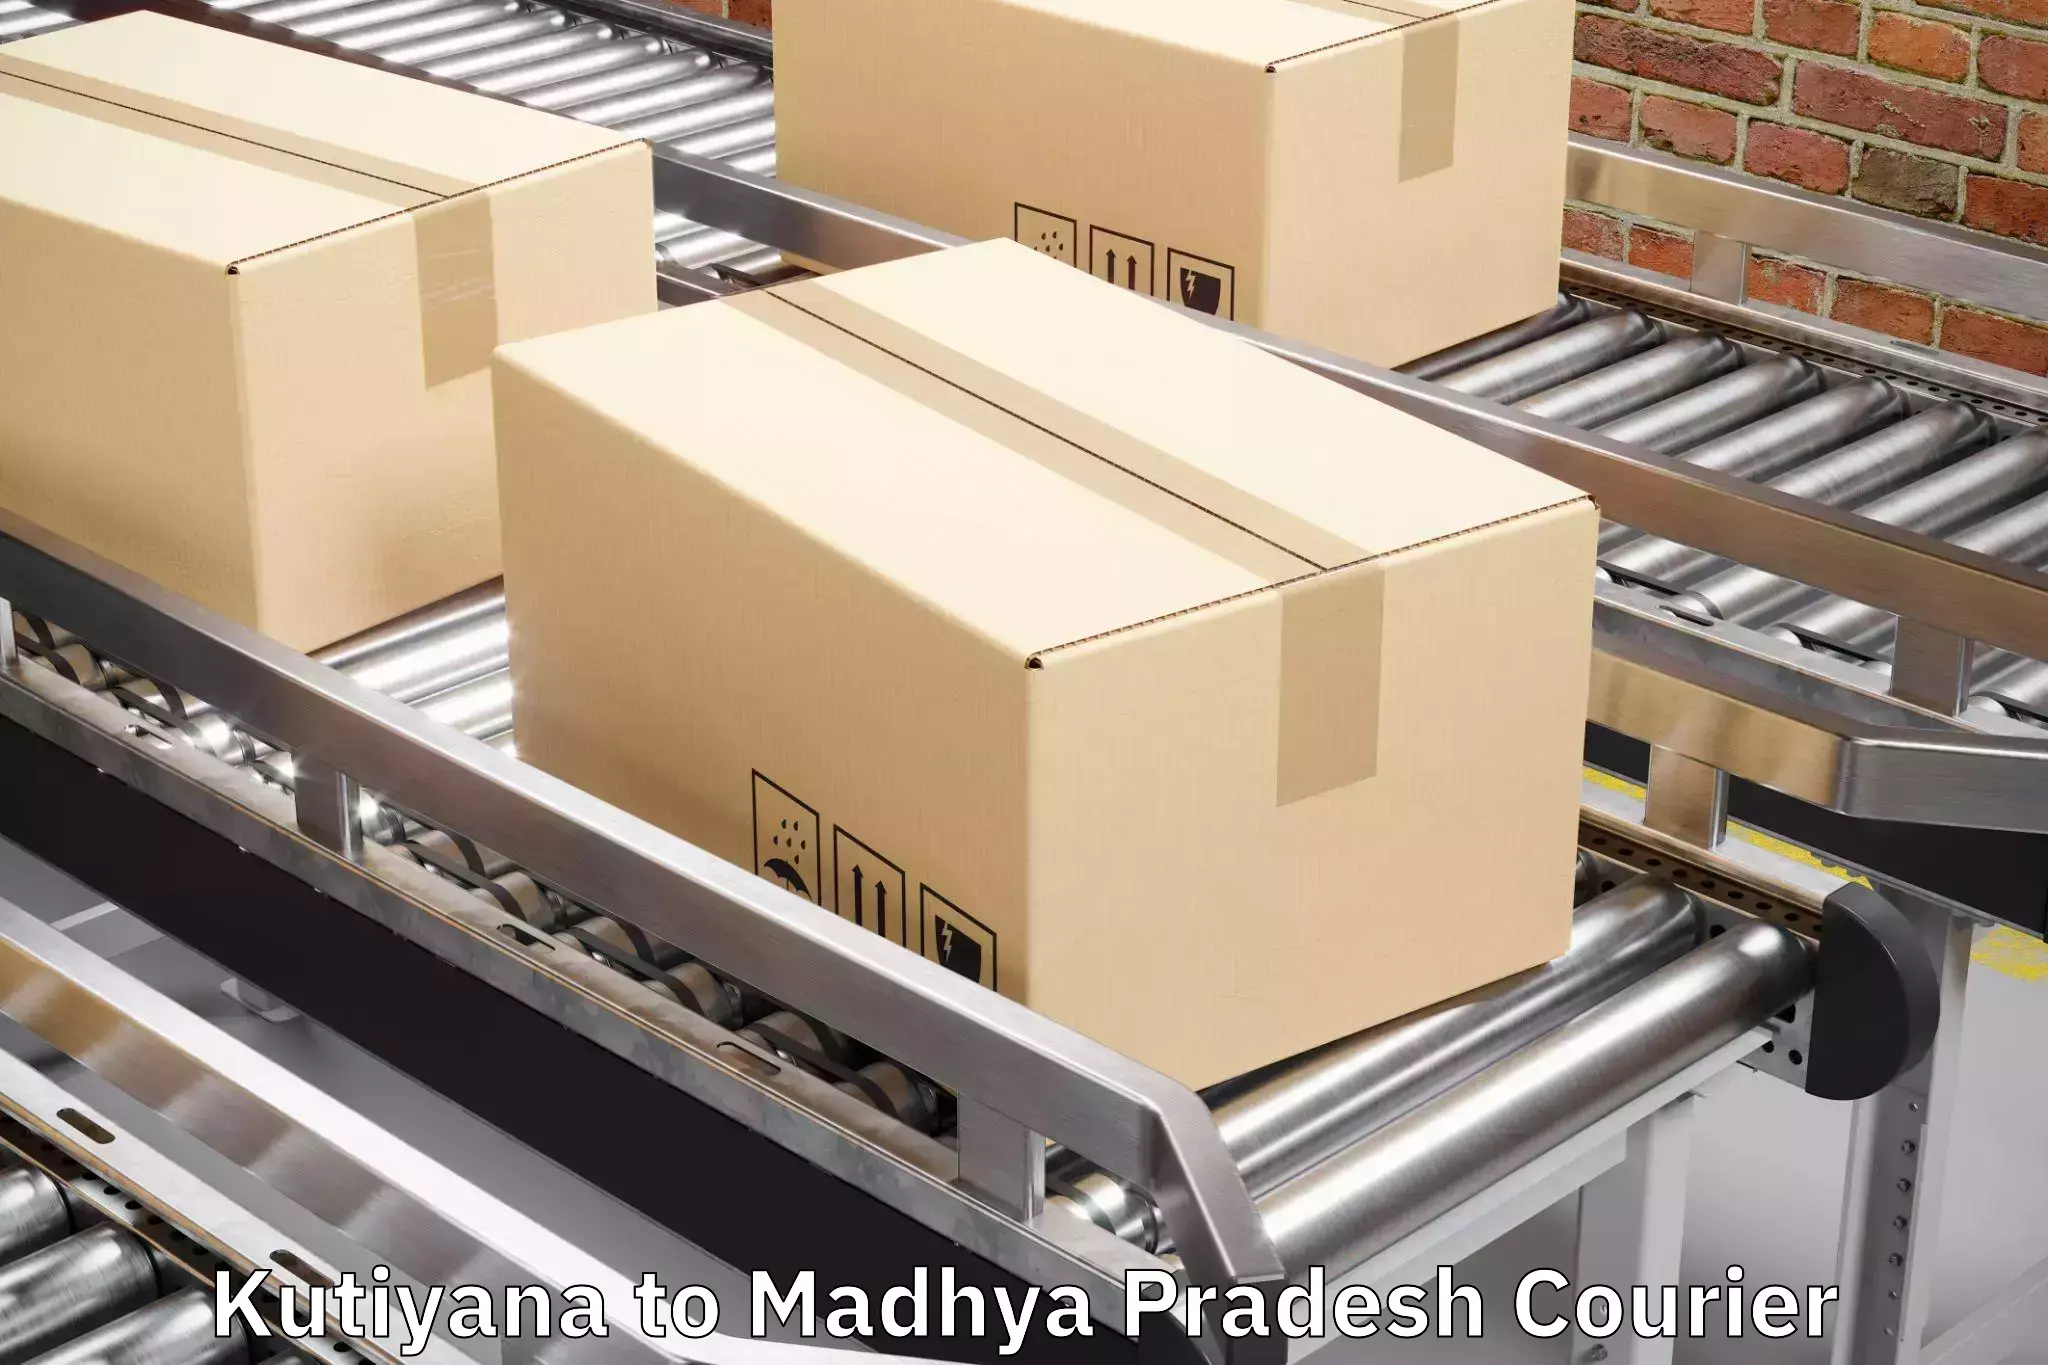 Baggage delivery planning in Kutiyana to Lavkush Nagar